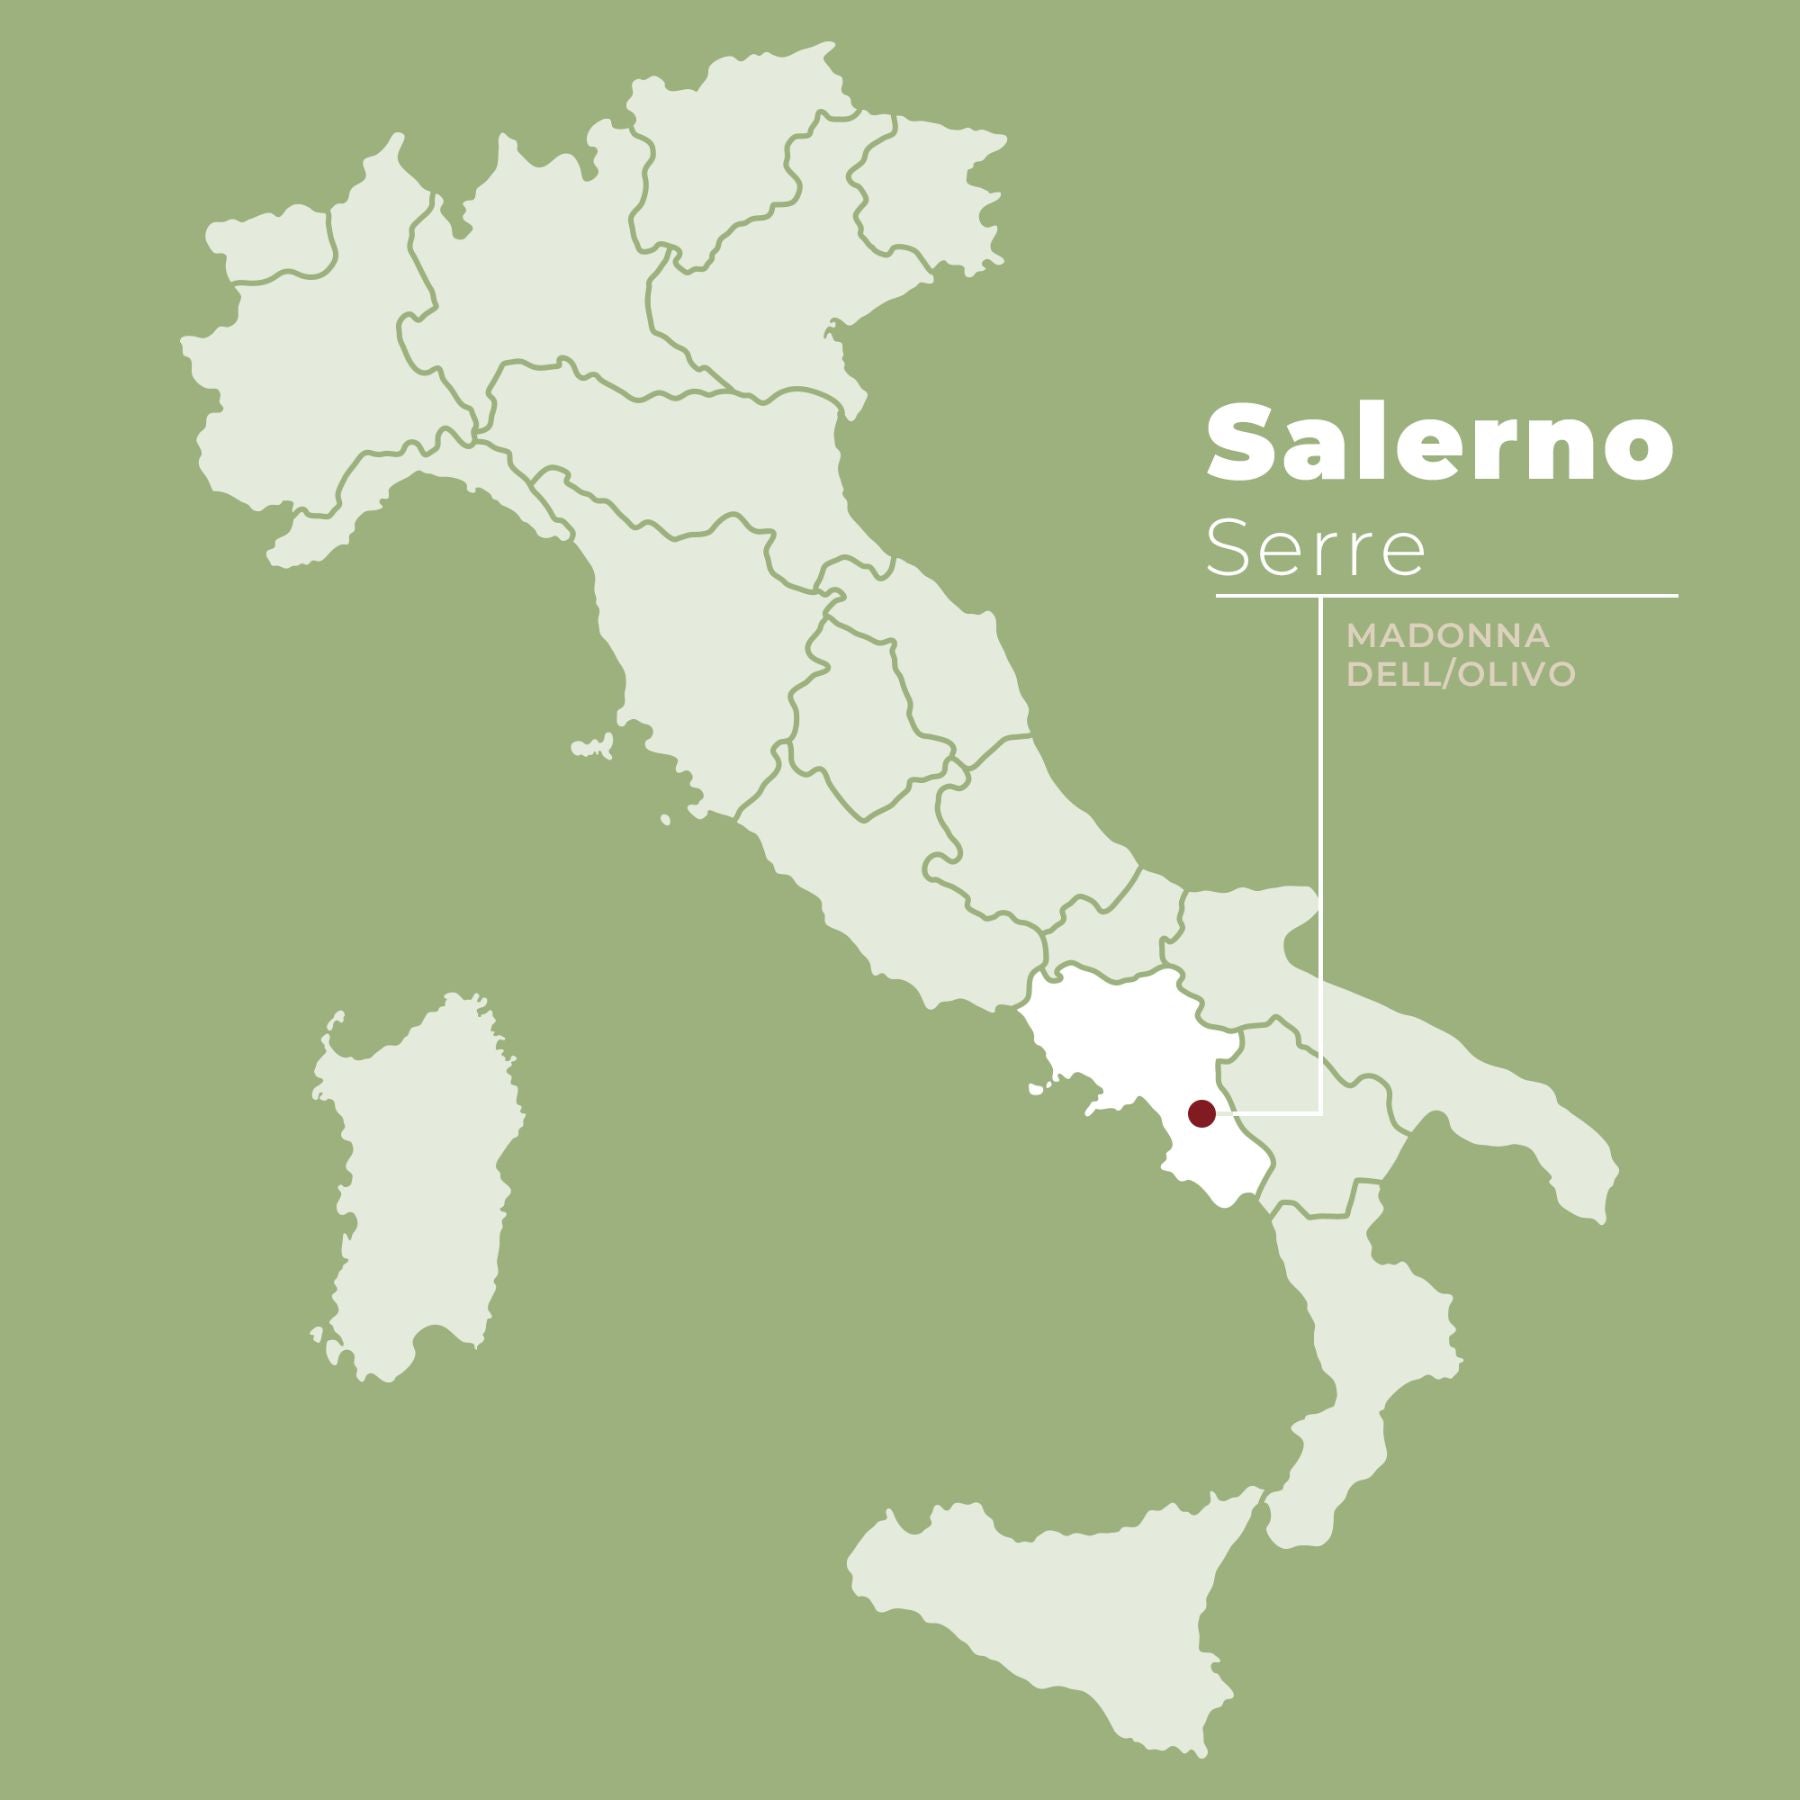 Mapa Włoch z zaznaczoną lokalizacją Madonna dell'Olivo